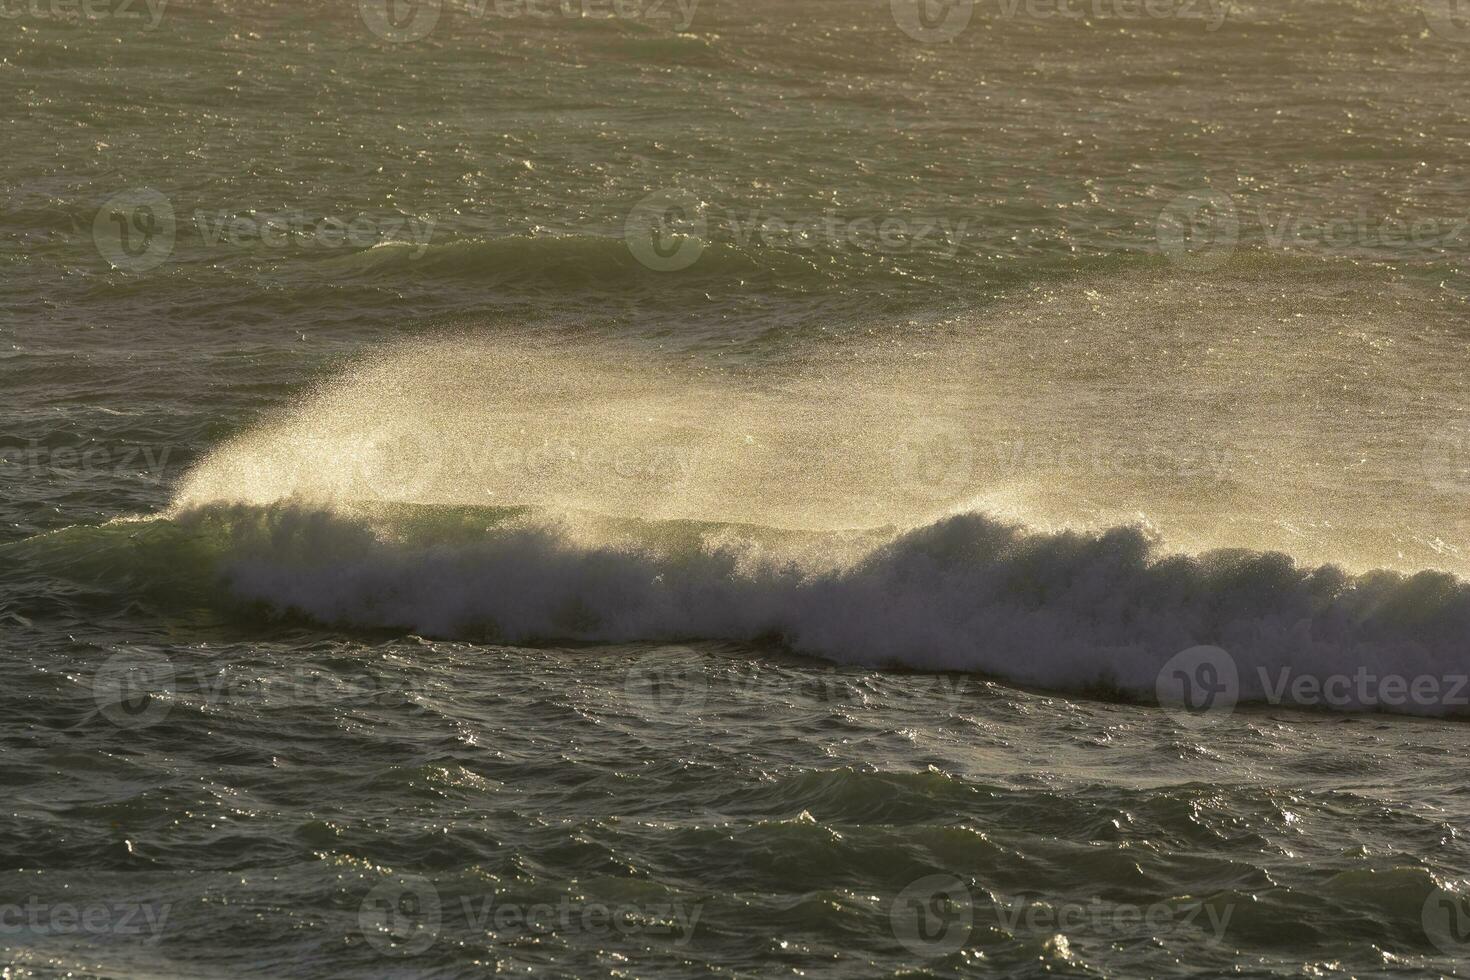 ondas com Forte vento depois de uma tempestade, Patagônia, Argentina. foto